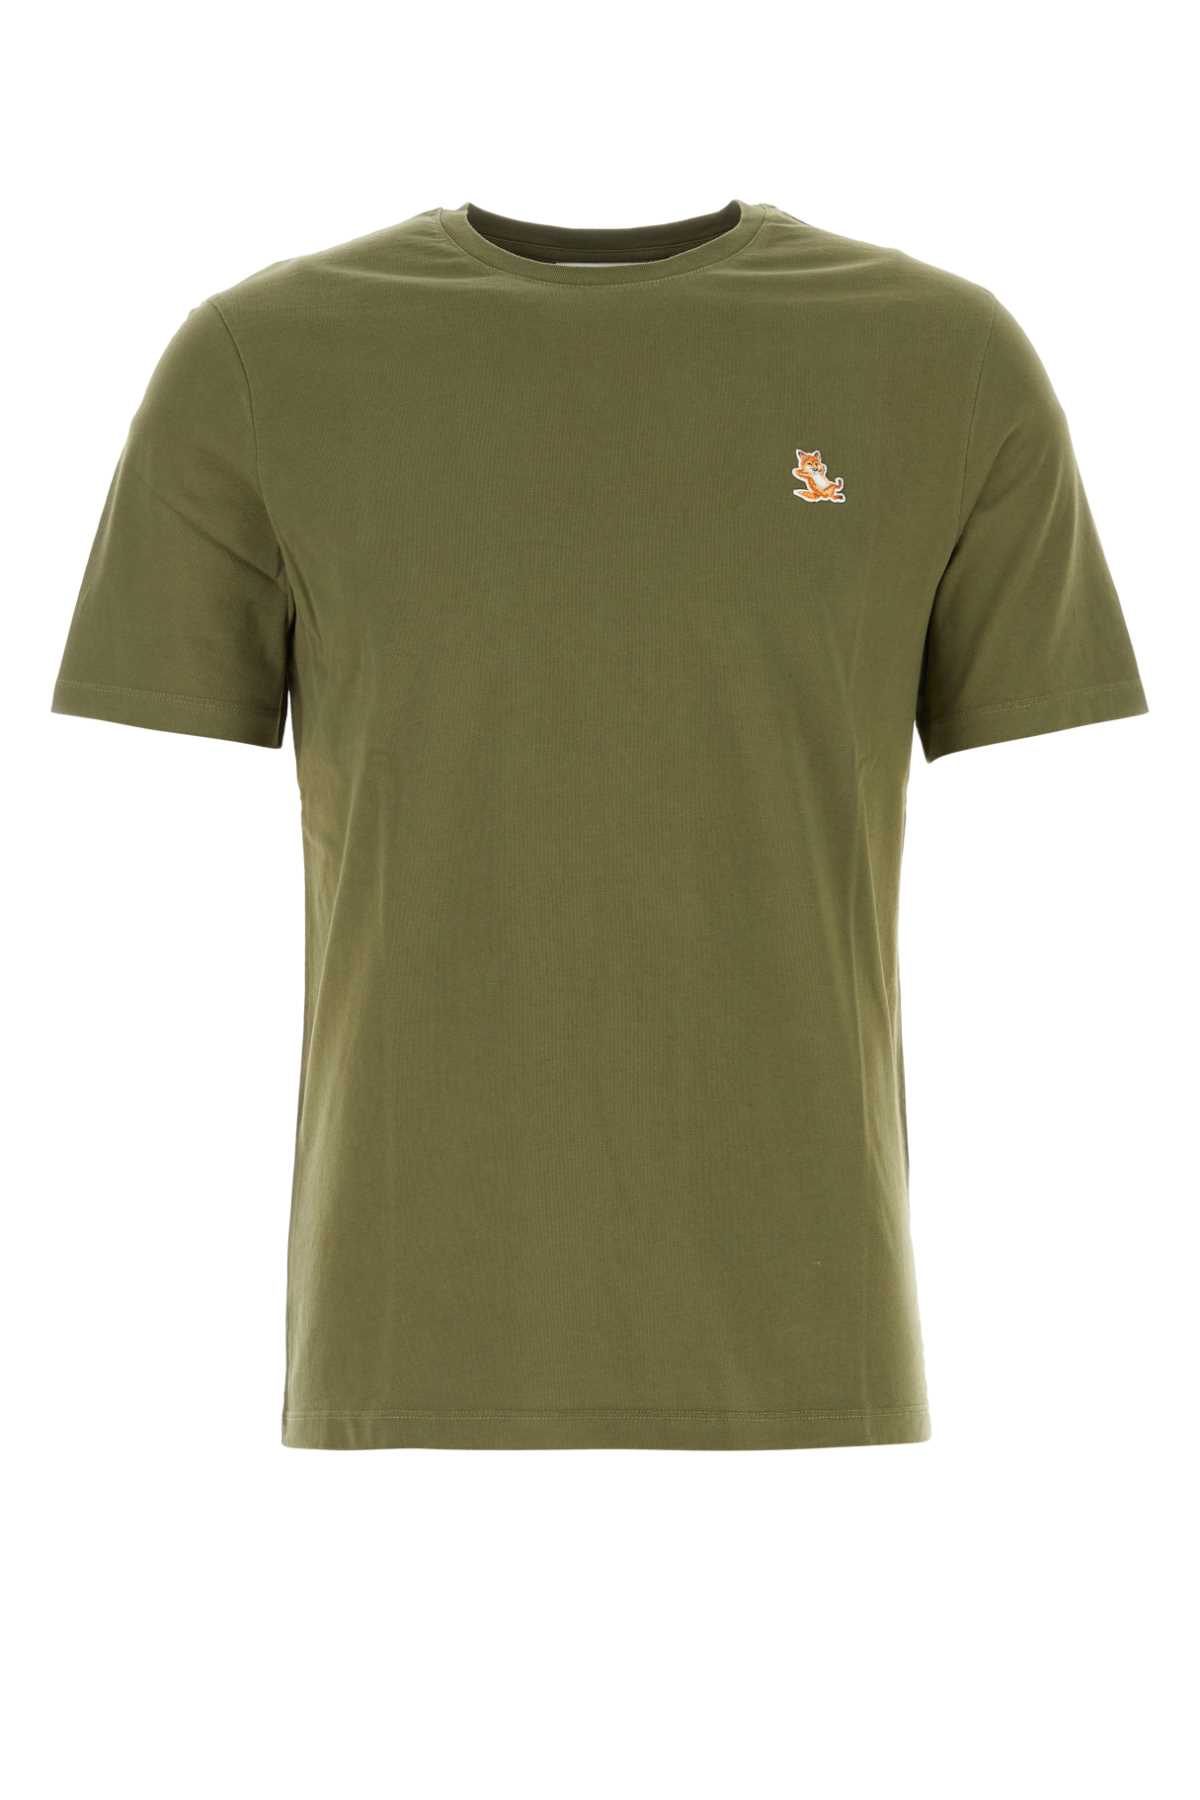 Maison Kitsuné Army Green Cotton T-shirt